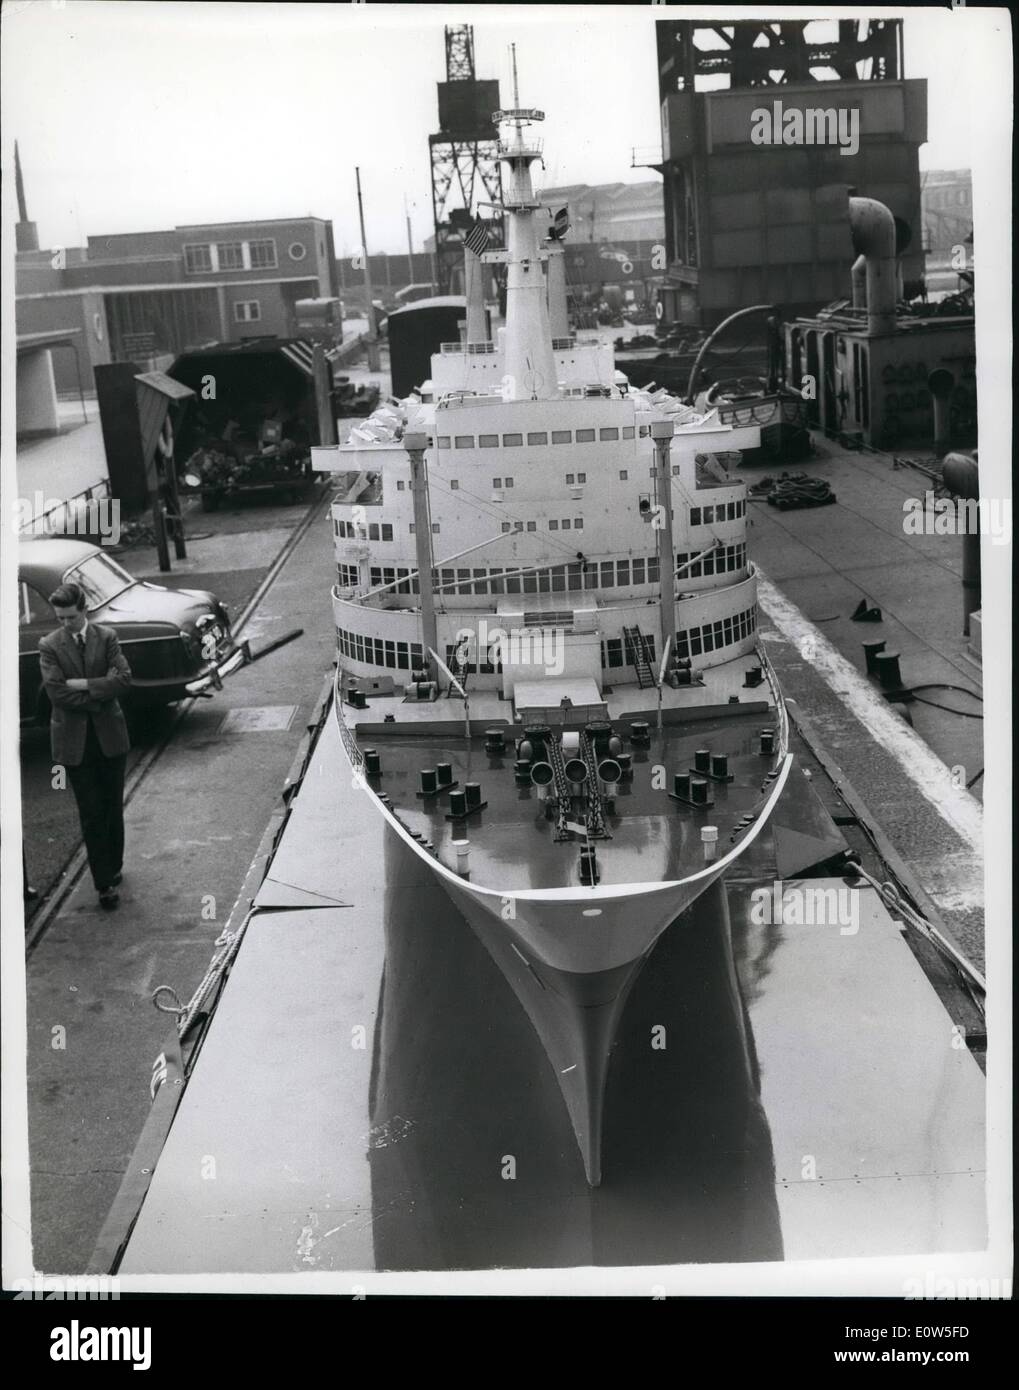 07 luglio 1961 - la nave più grande che non galleggiava mai a Londra 'docks'; la nave più grande che non galleggiava mai arrivò al London Docks questa mattina - ma era a bordo di un'altra nave. La nave è un modello di due tonnellate, 40 piedi della nave Holland - America Liner Rotterdam, ha dichiarato di essere il modello più grande del mondo, il ''Little'' costo 3,500 e sarà in mostra per tre mesi al molo Southend. Questa mattina, la foto mostra il modello Rotterdam su un trailer sulla strada per Southend da London Docks. Foto Stock